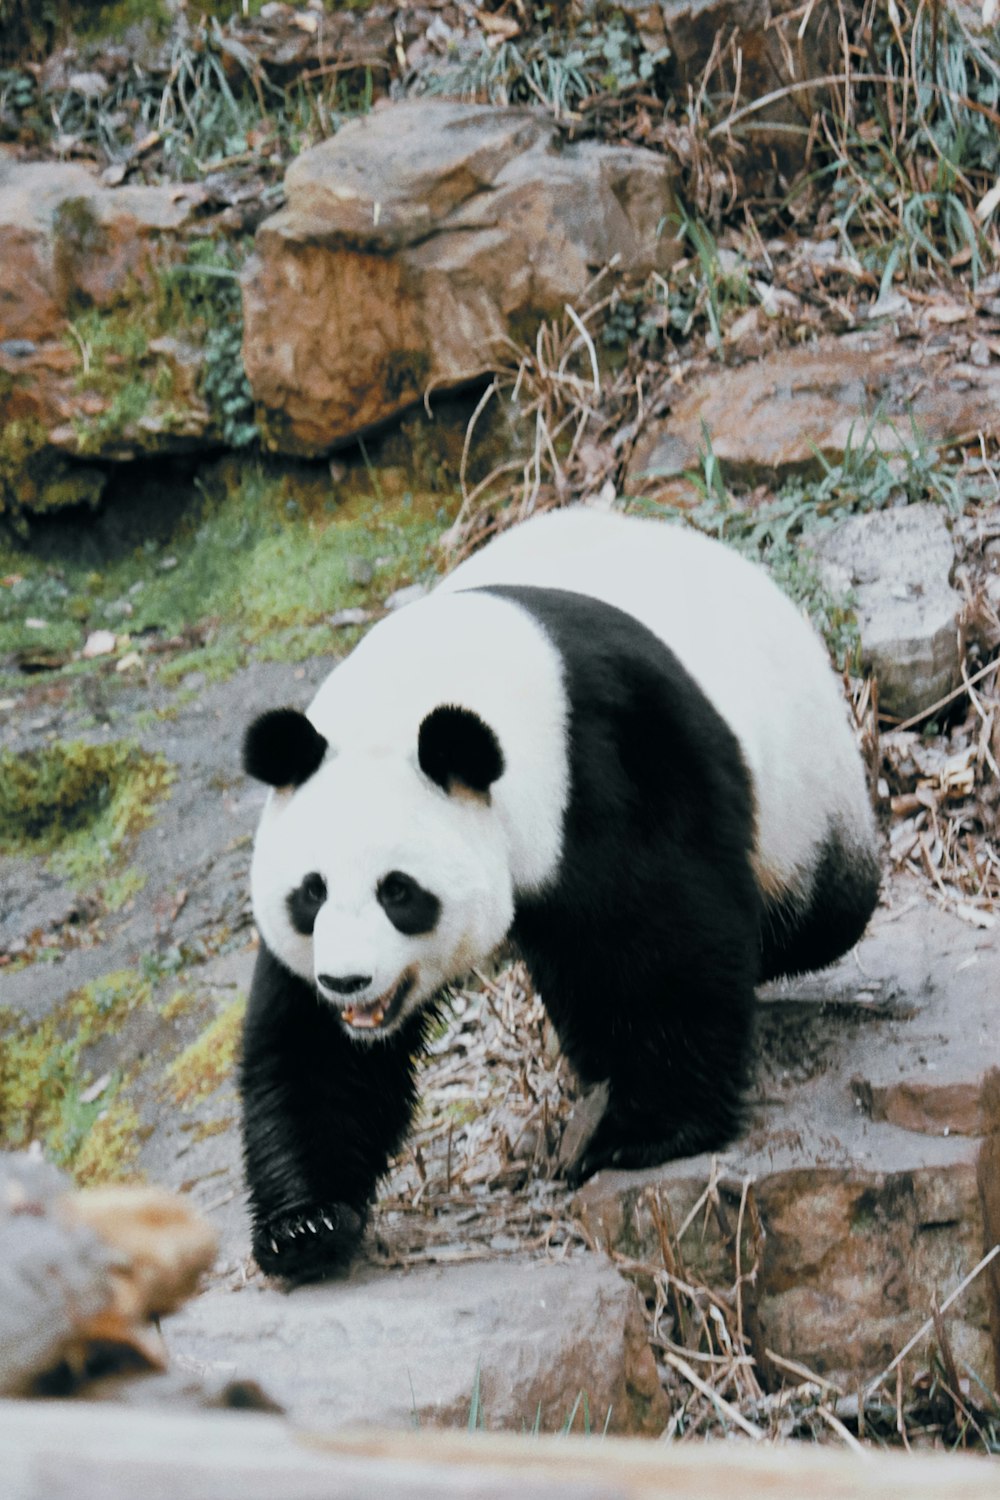 a panda bear is walking on some rocks